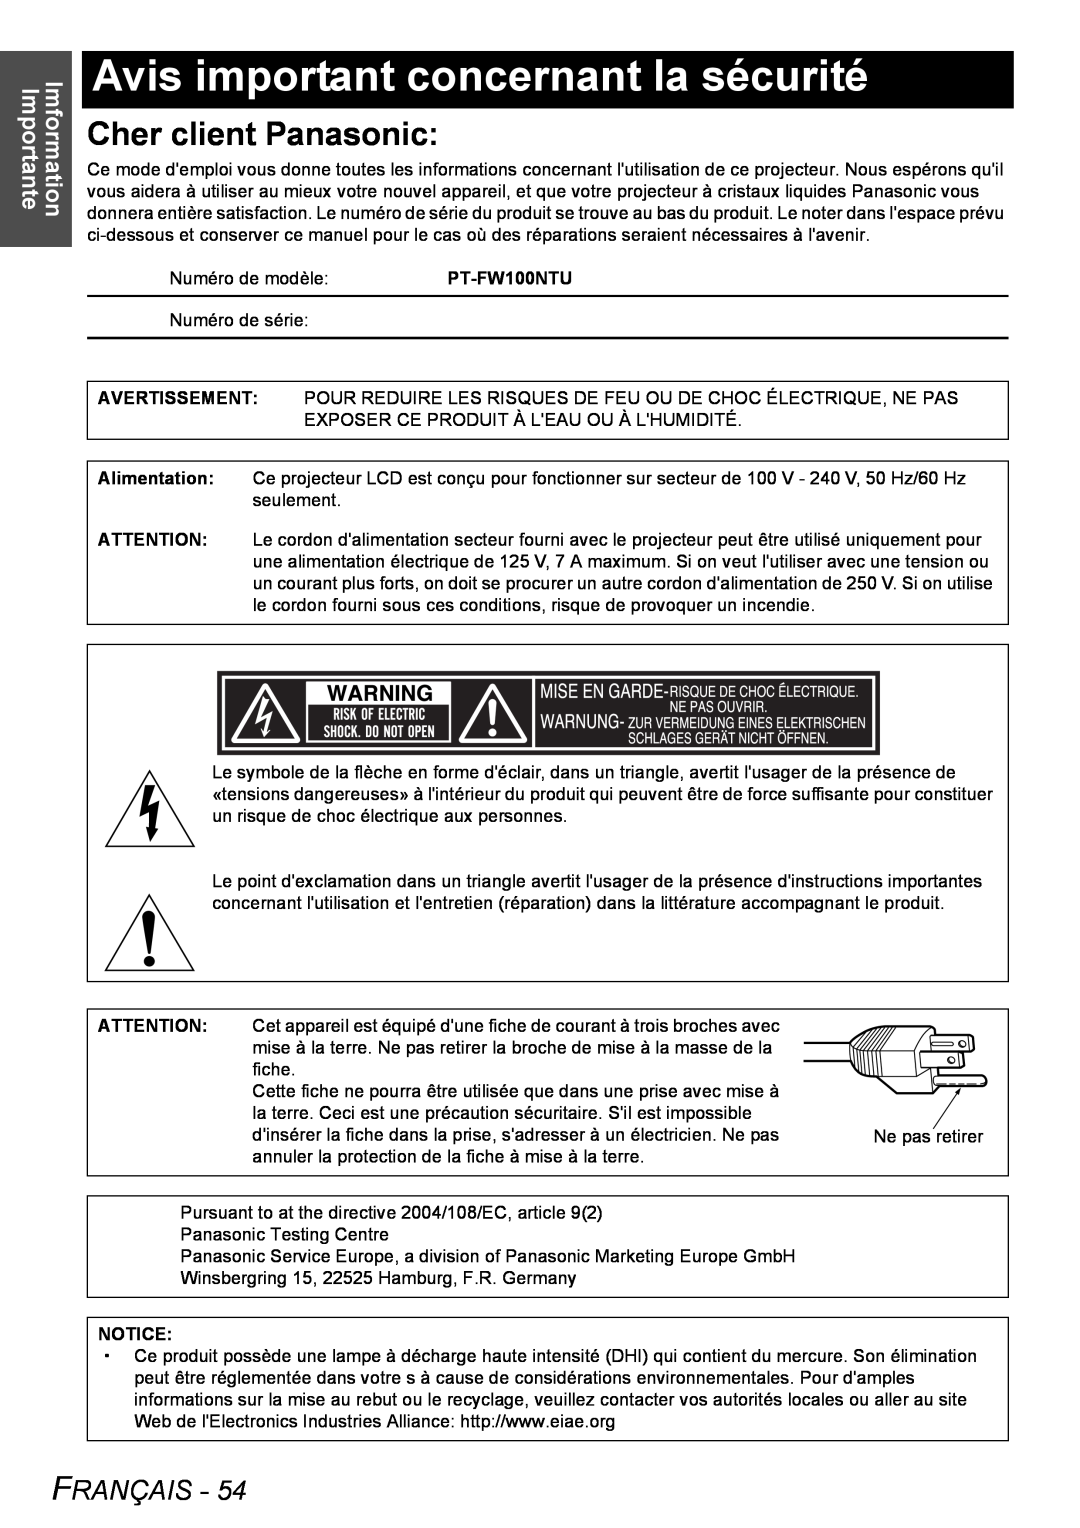 Panasonic PT-FW100NTU manual Avis important concernant la sécurité, Cher client Panasonic, Français, Imformation Importante 